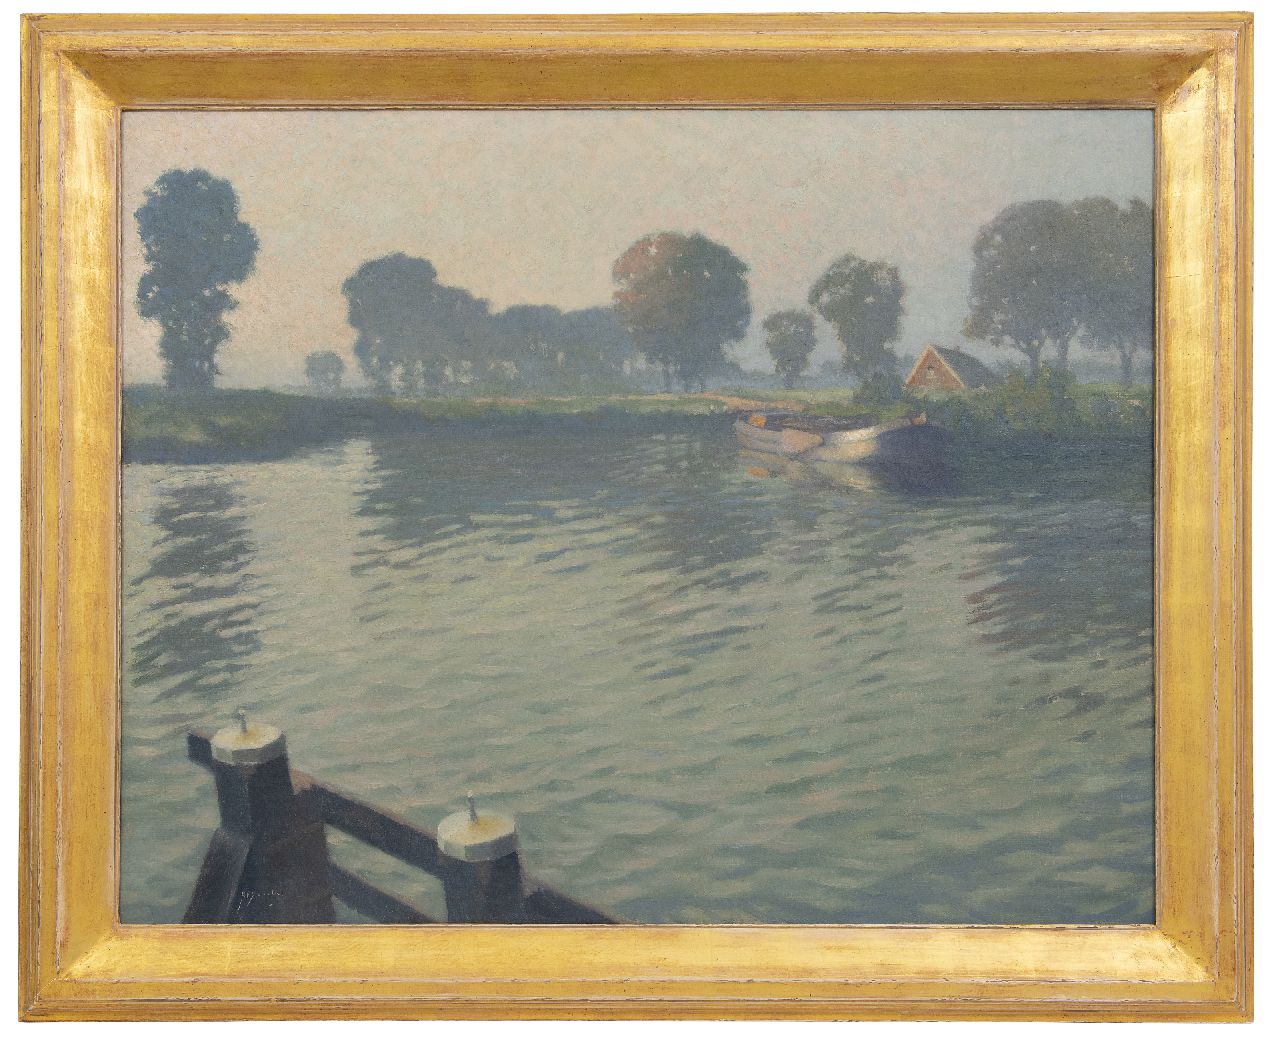 Schotel A.P.  | Anthonie Pieter Schotel | Schilderijen te koop aangeboden | Afgemeerd schip bij Muiden, olieverf op doek 80,2 x 100,5 cm, gesigneerd linksonder